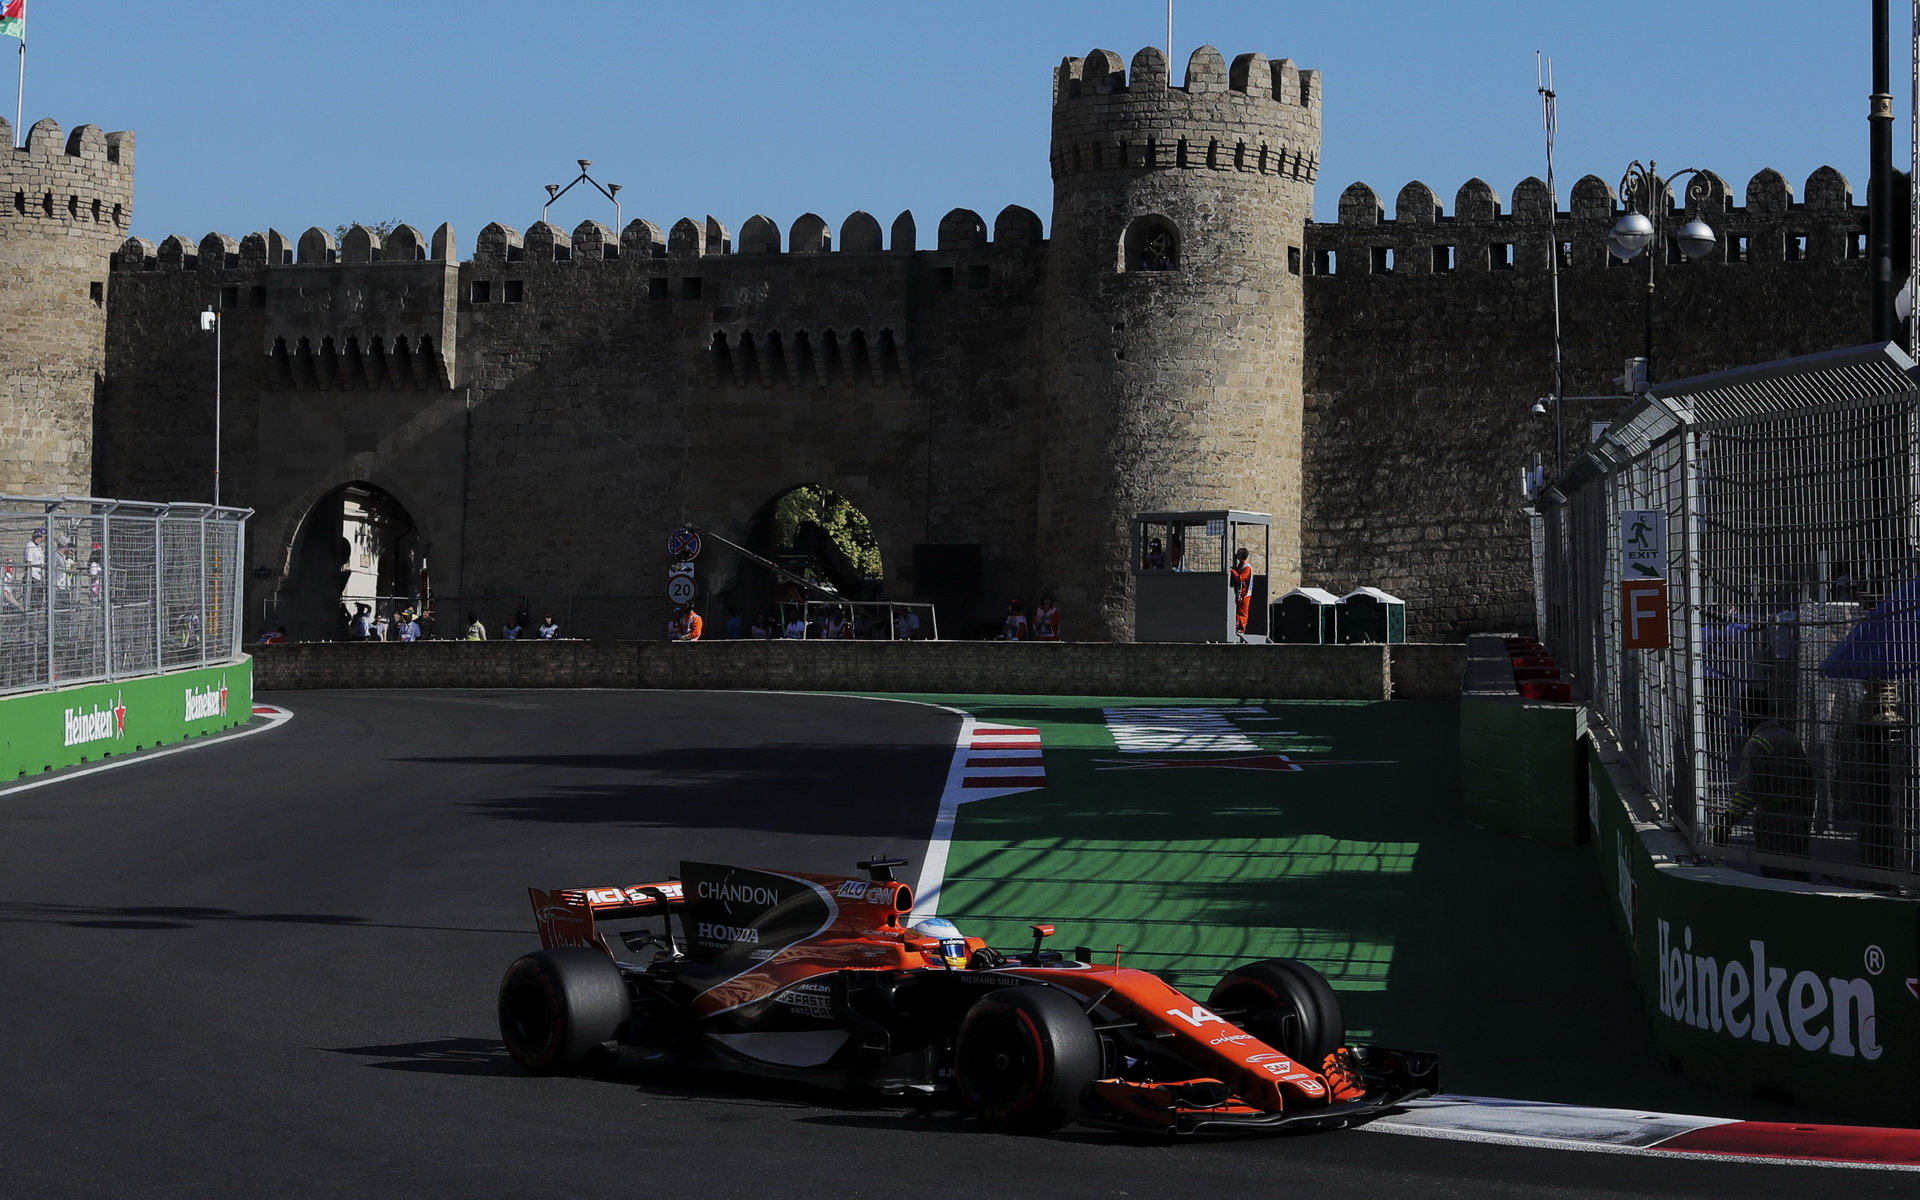 Fernando Alonso v závodě v Baku